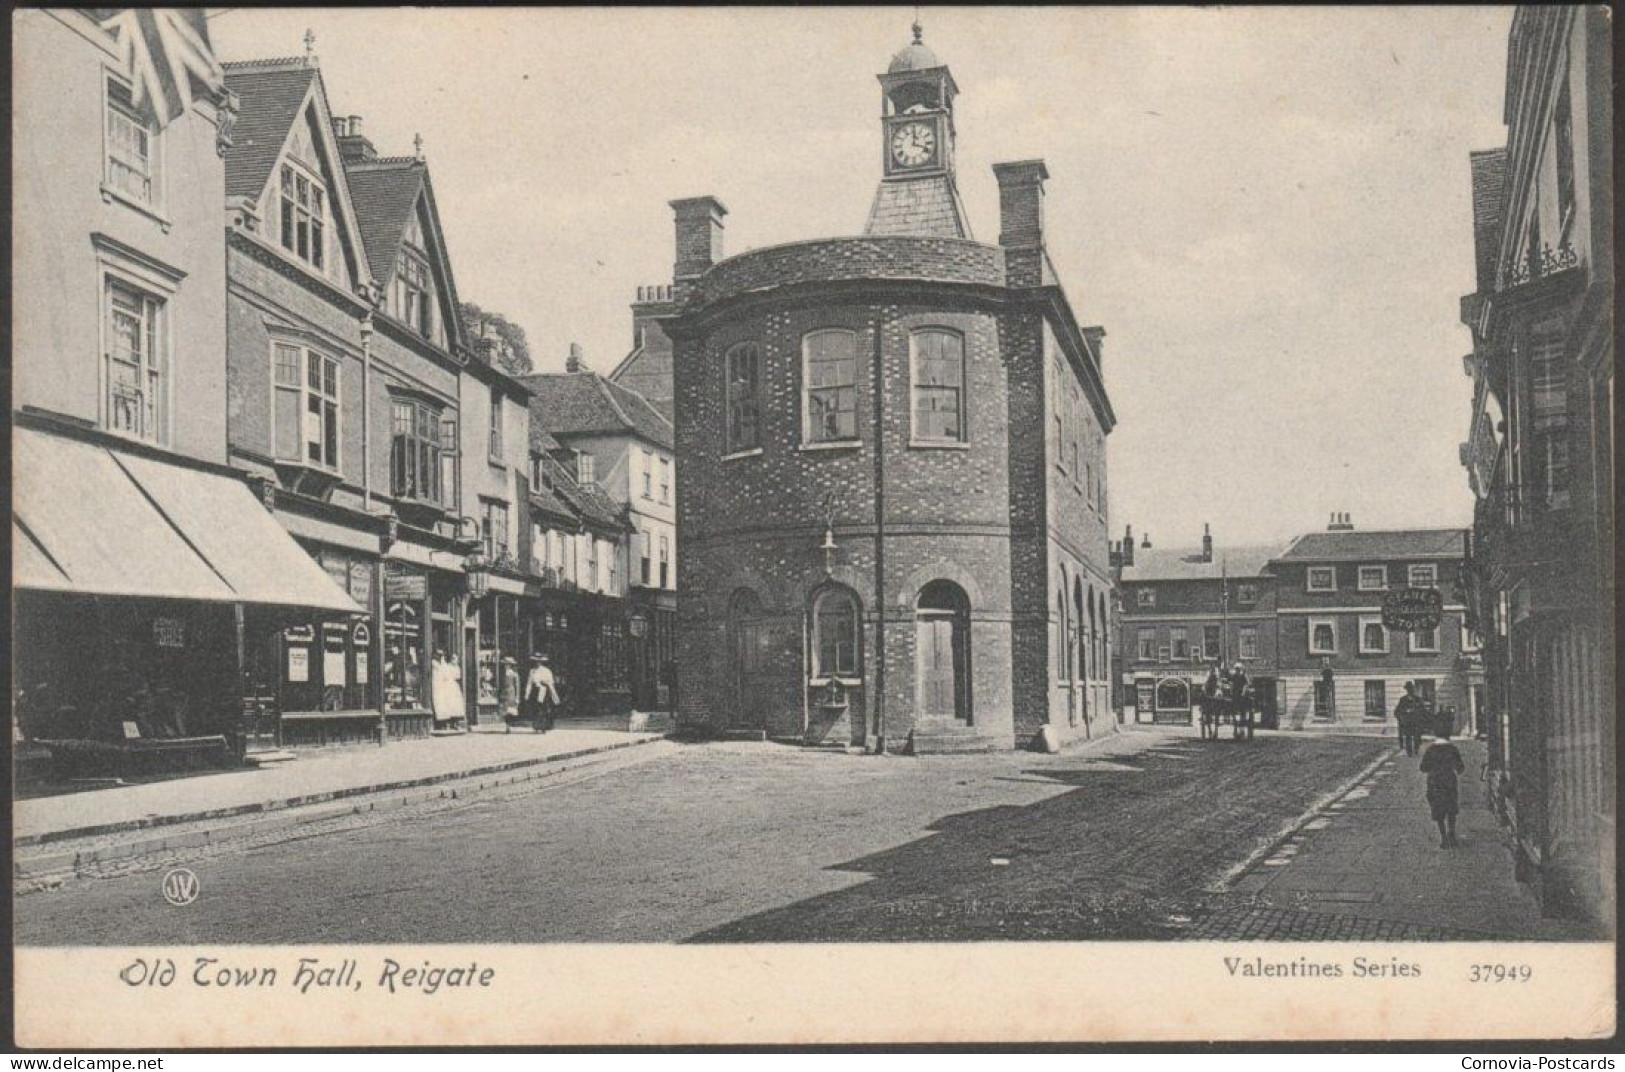 Old Town Hall, Reigate, Surrey, C.1905-10 - Valentine's Postcard - Surrey